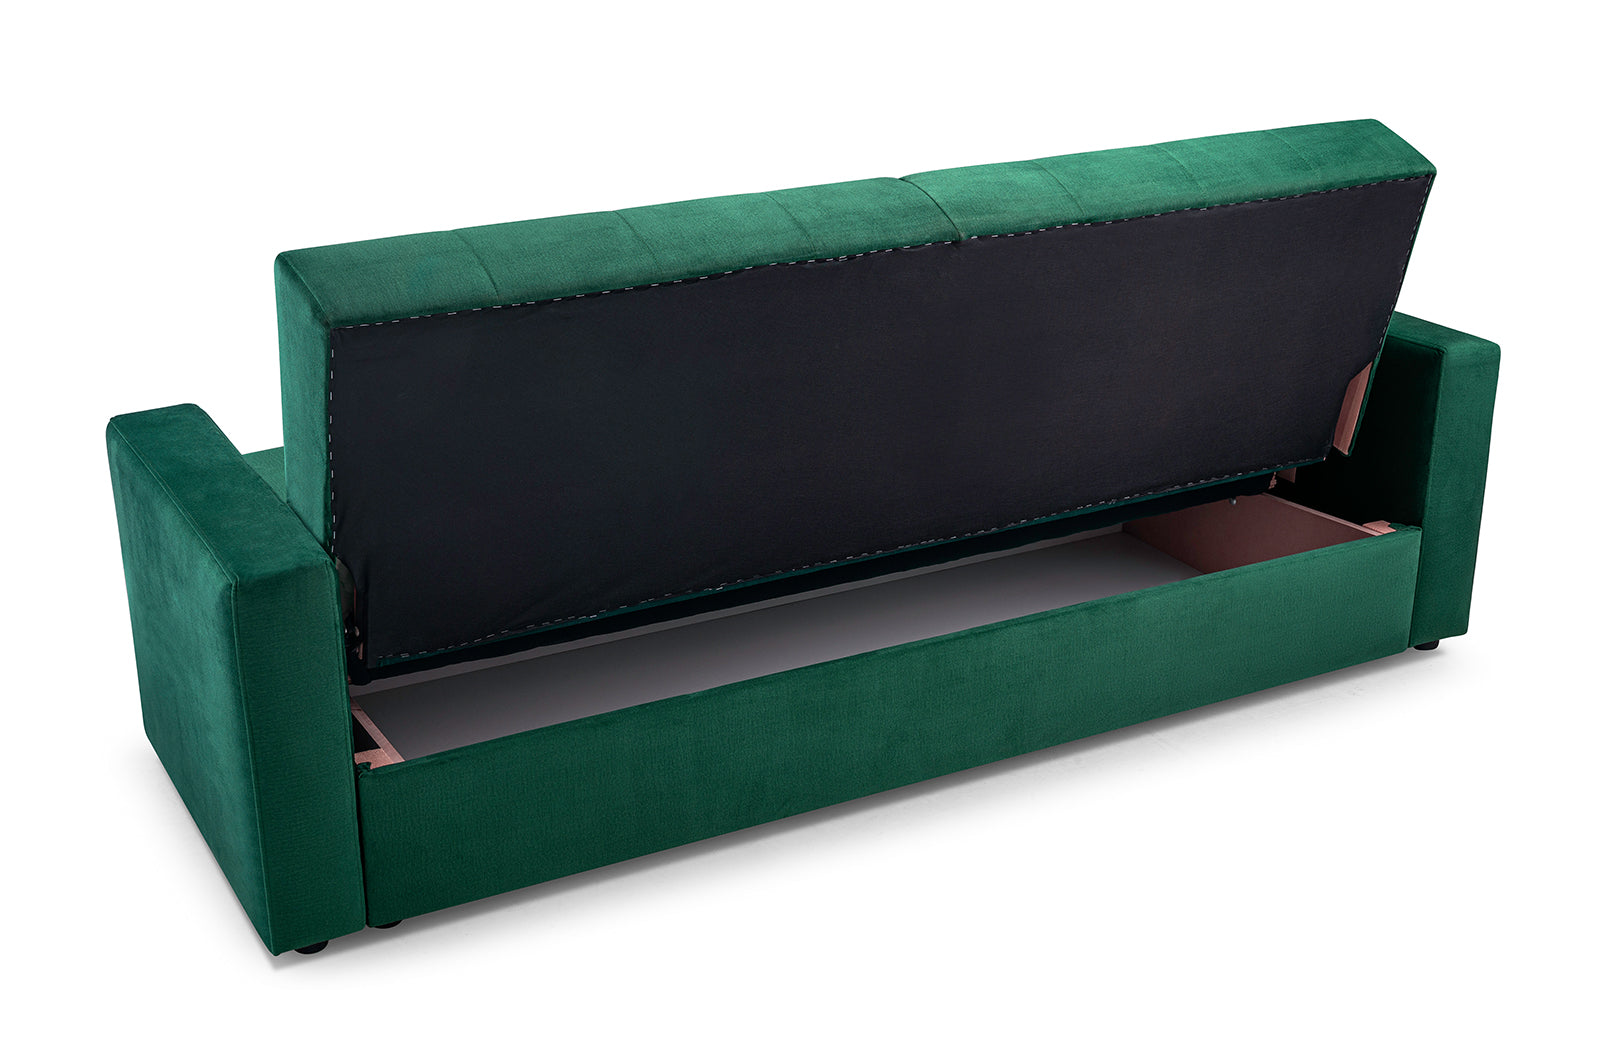 Sofa bed with minimalist shape - BAWARIA